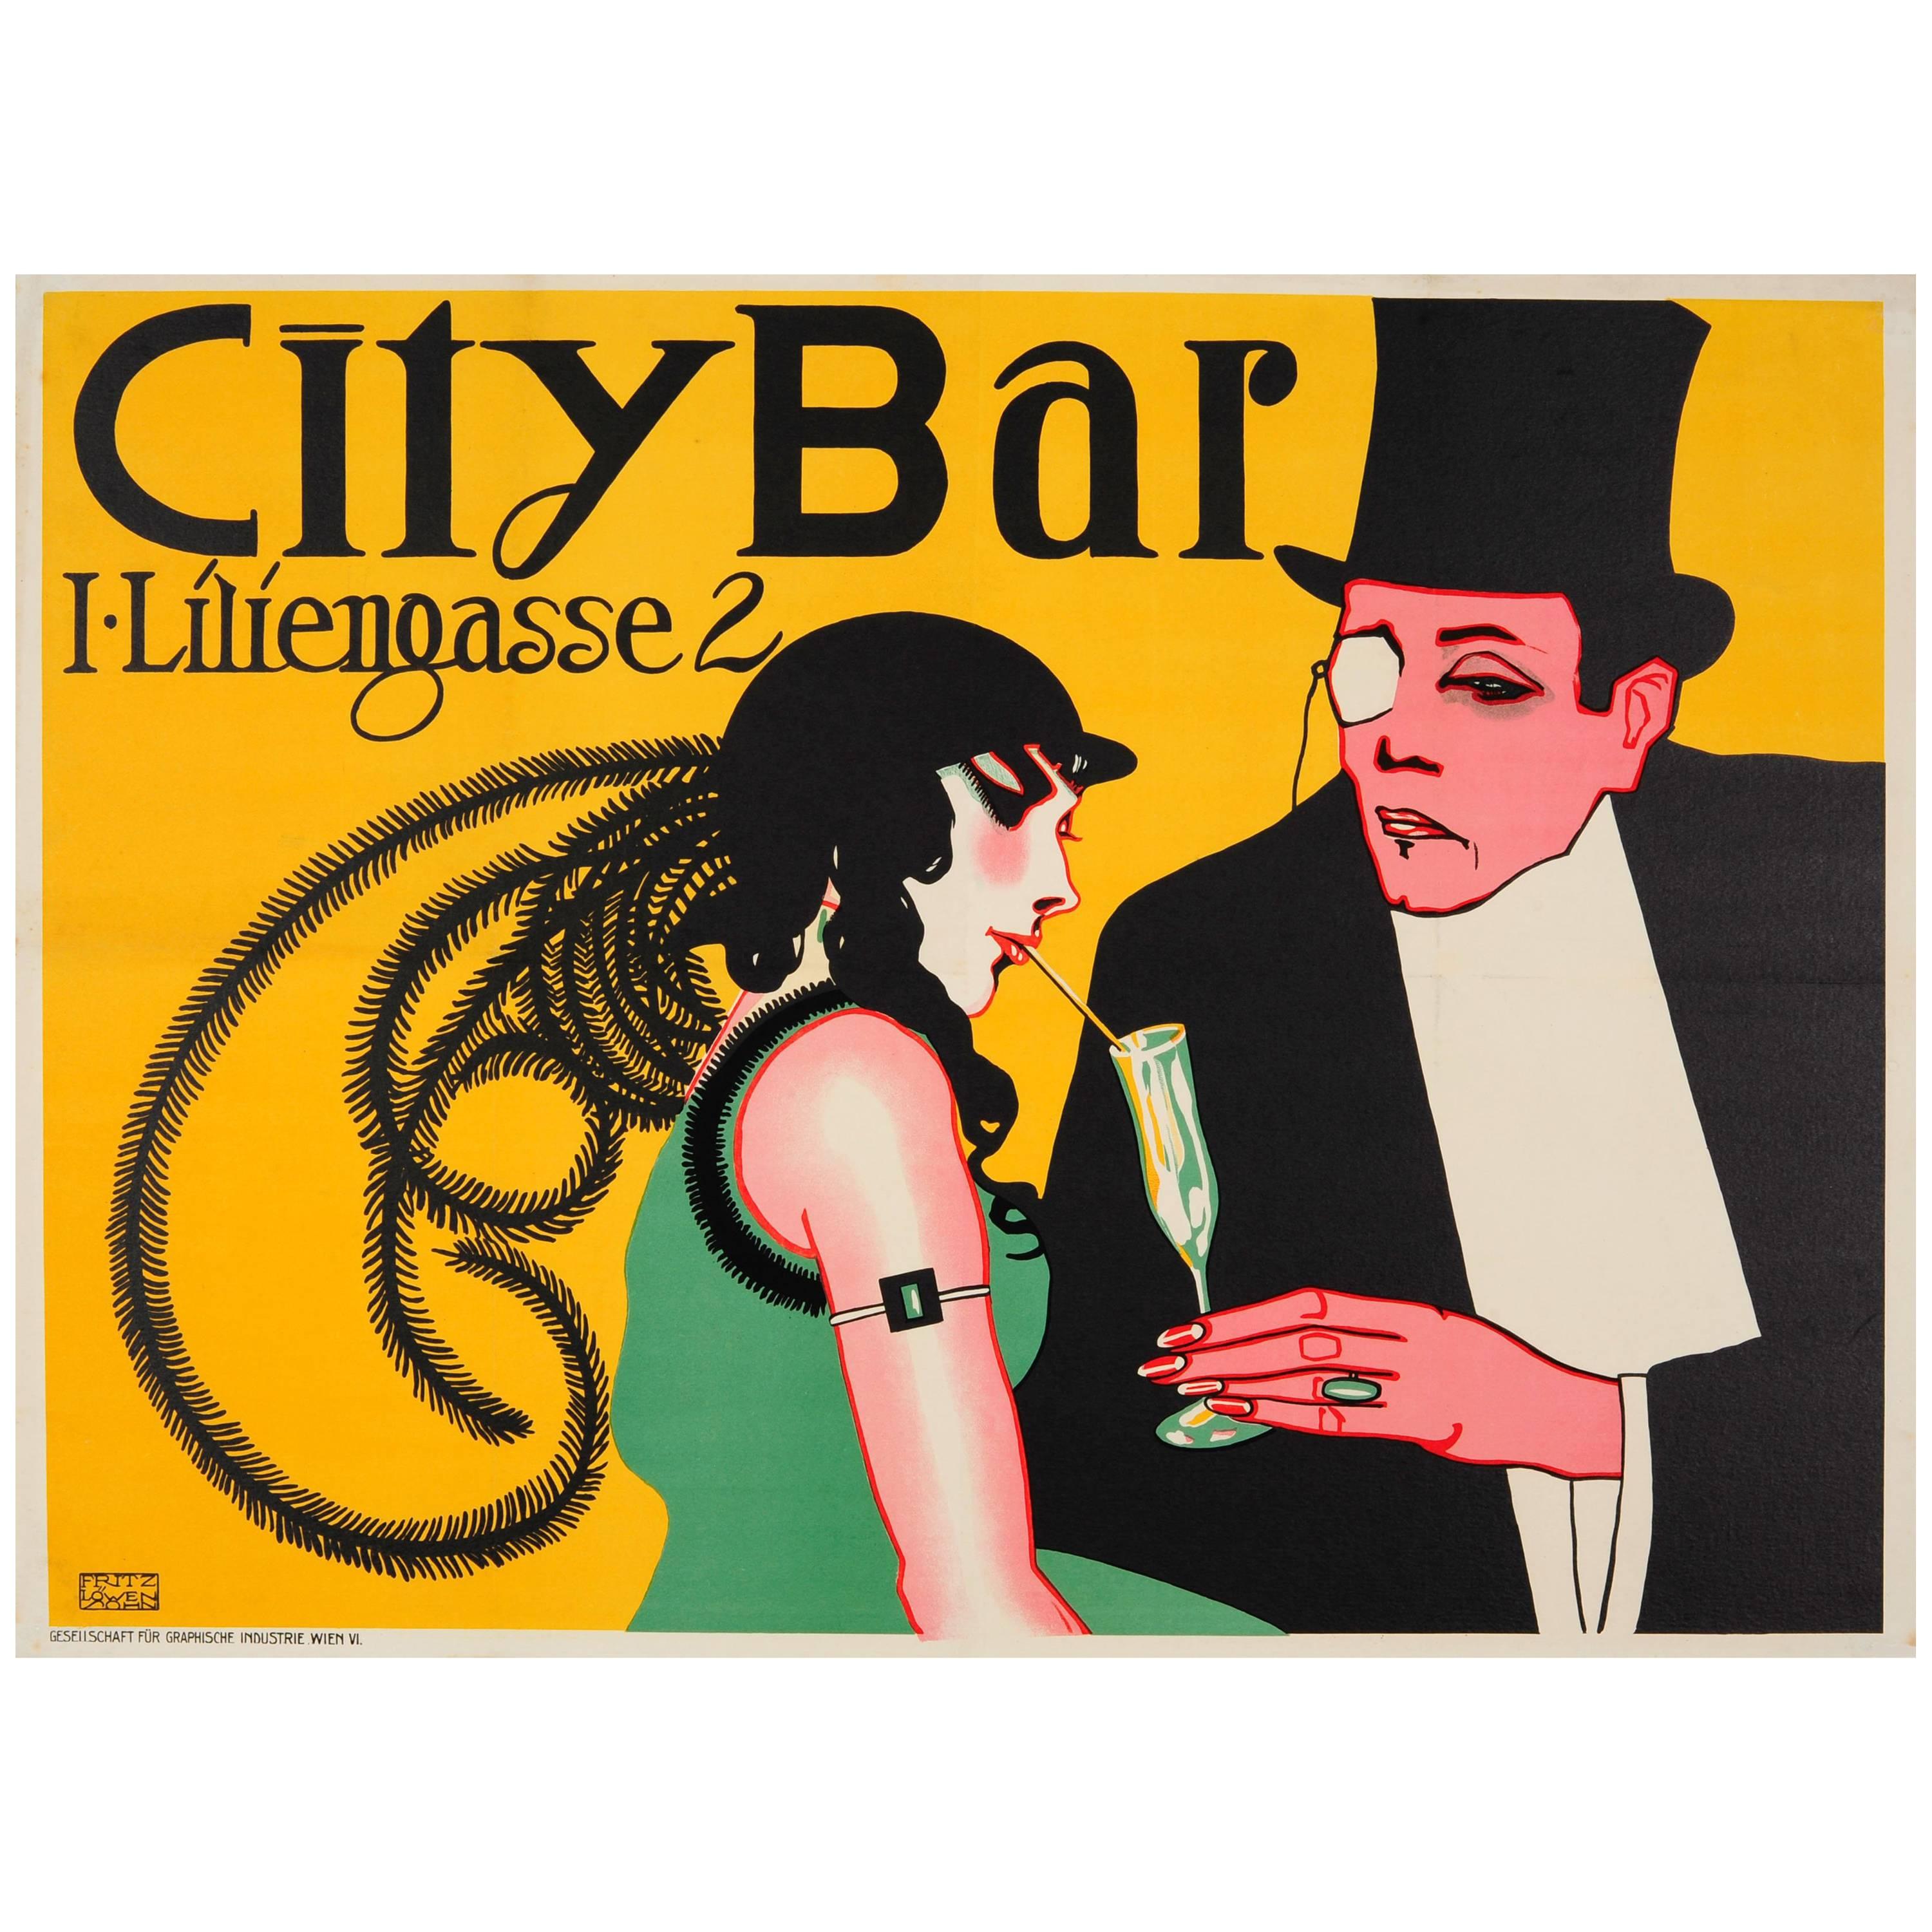 Original Vienna Secessionism Design Poster for City Bar - Now Eden Bar - Austria